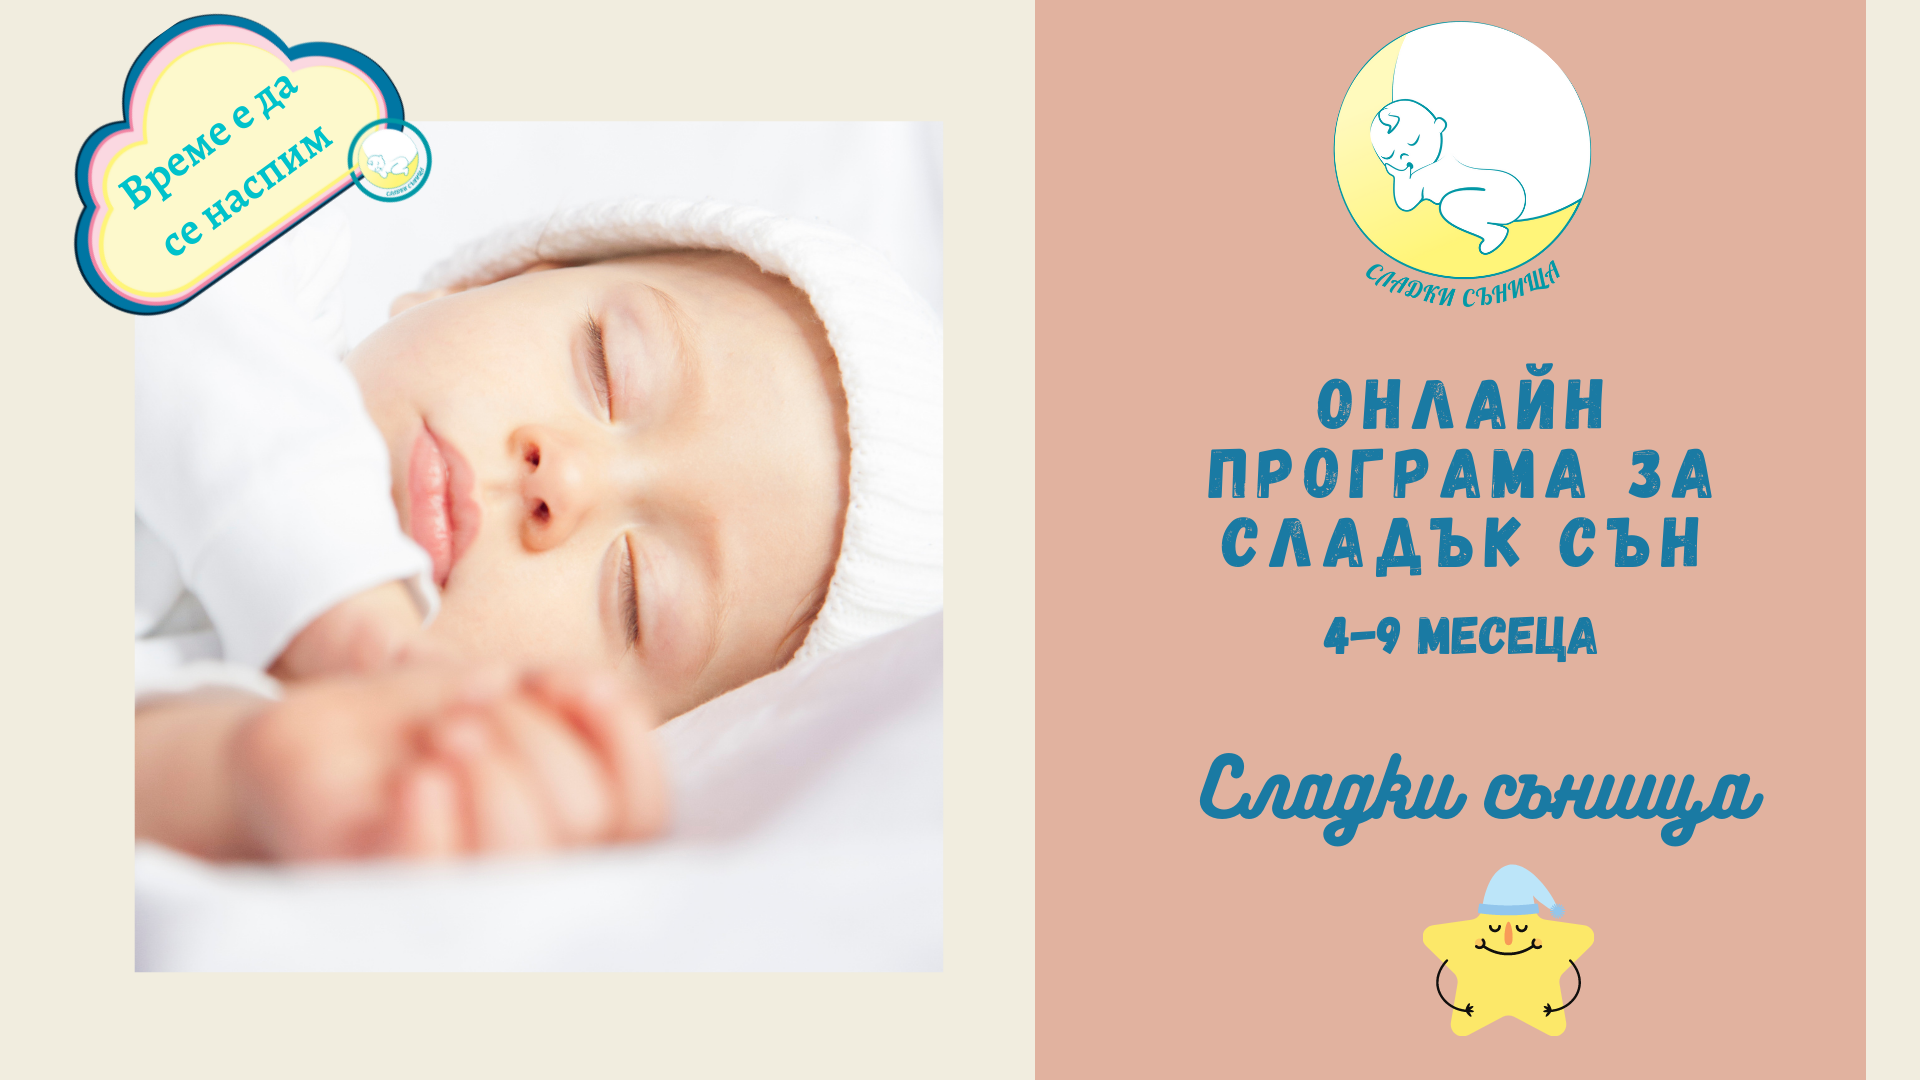 Онлайн програма за сладък сън за бебета на възраст 4-9 месеца